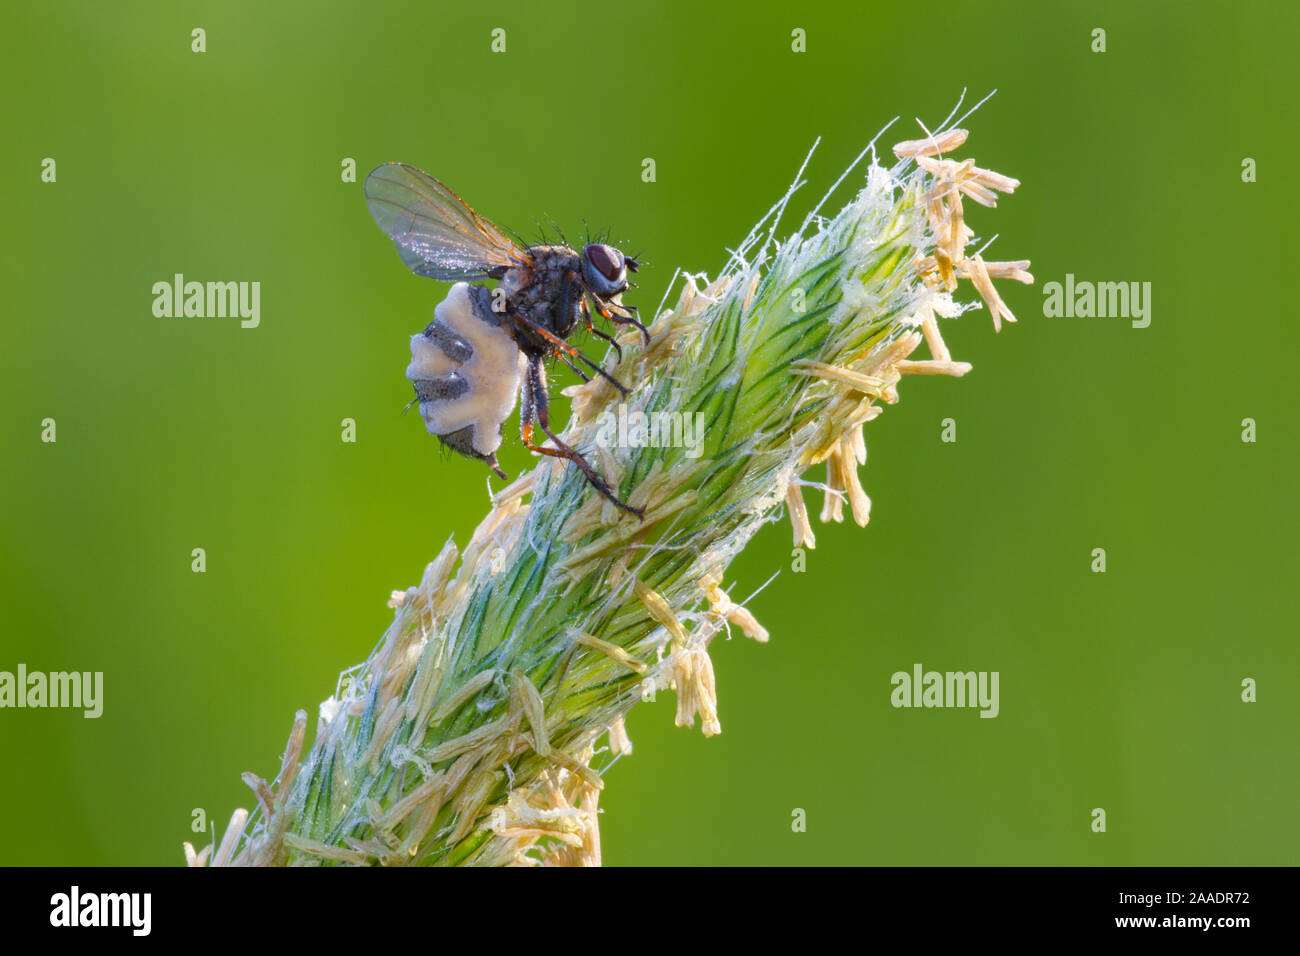 Fliege befallen vom Fliegentöter, Entomophthora muscae, Pilzart aus Ordnung der Fliegentöterpilzartigen (Entomophthorales) Stock Photo